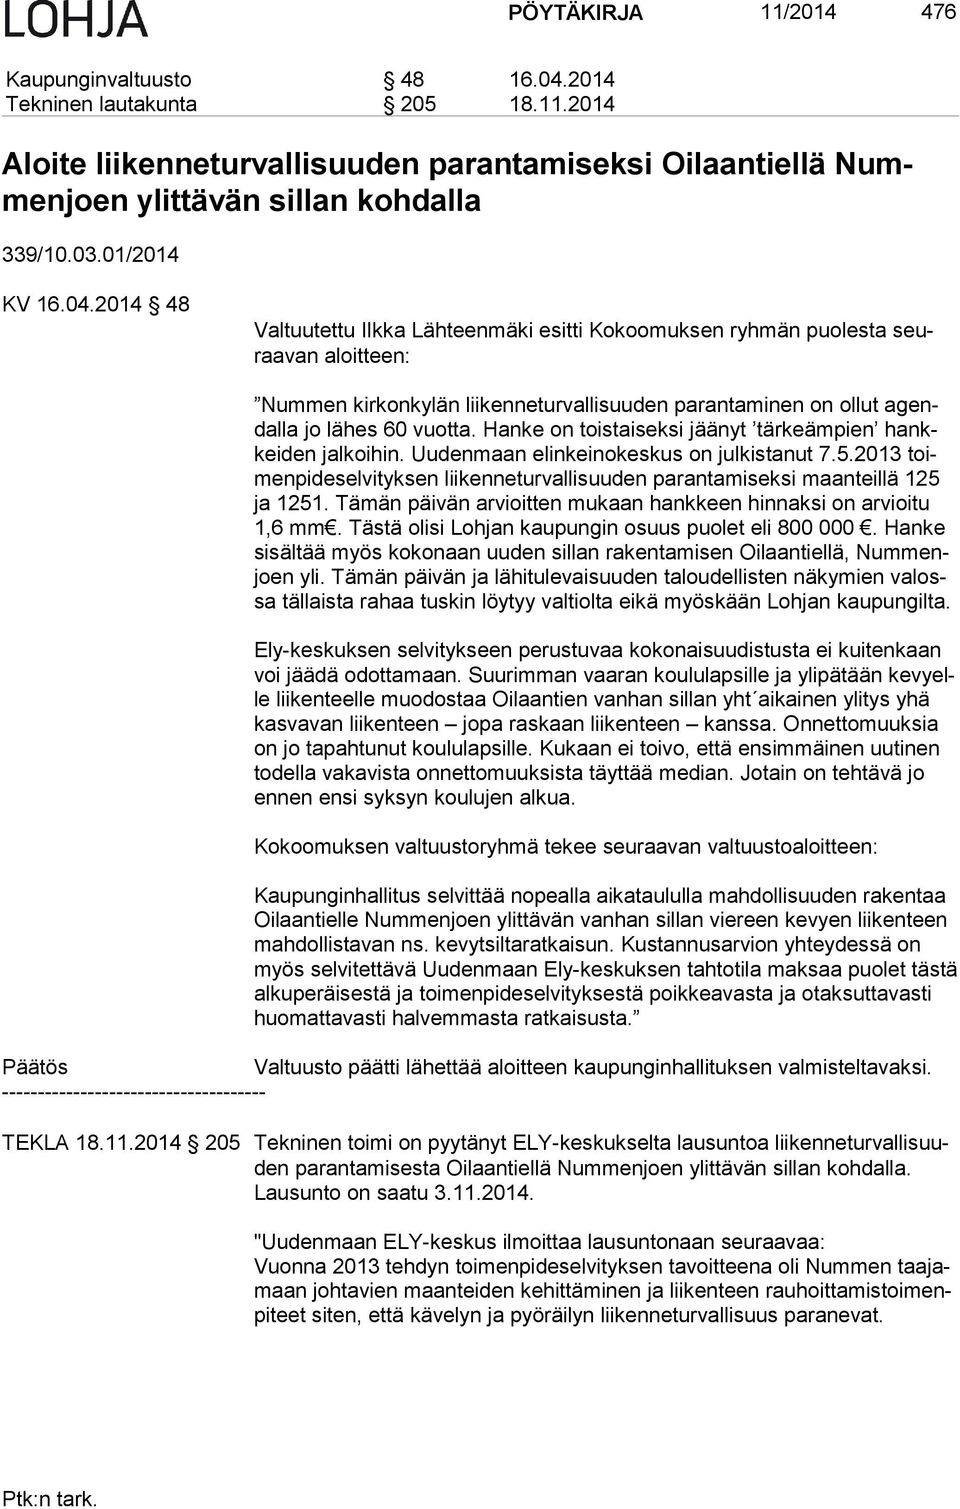 2014 48 Valtuutettu Ilkka Lähteenmäki esitti Kokoomuksen ryhmän puolesta seuraa van aloitteen: Nummen kirkonkylän liikenneturvallisuuden parantaminen on ollut agendal la jo lähes 60 vuotta.